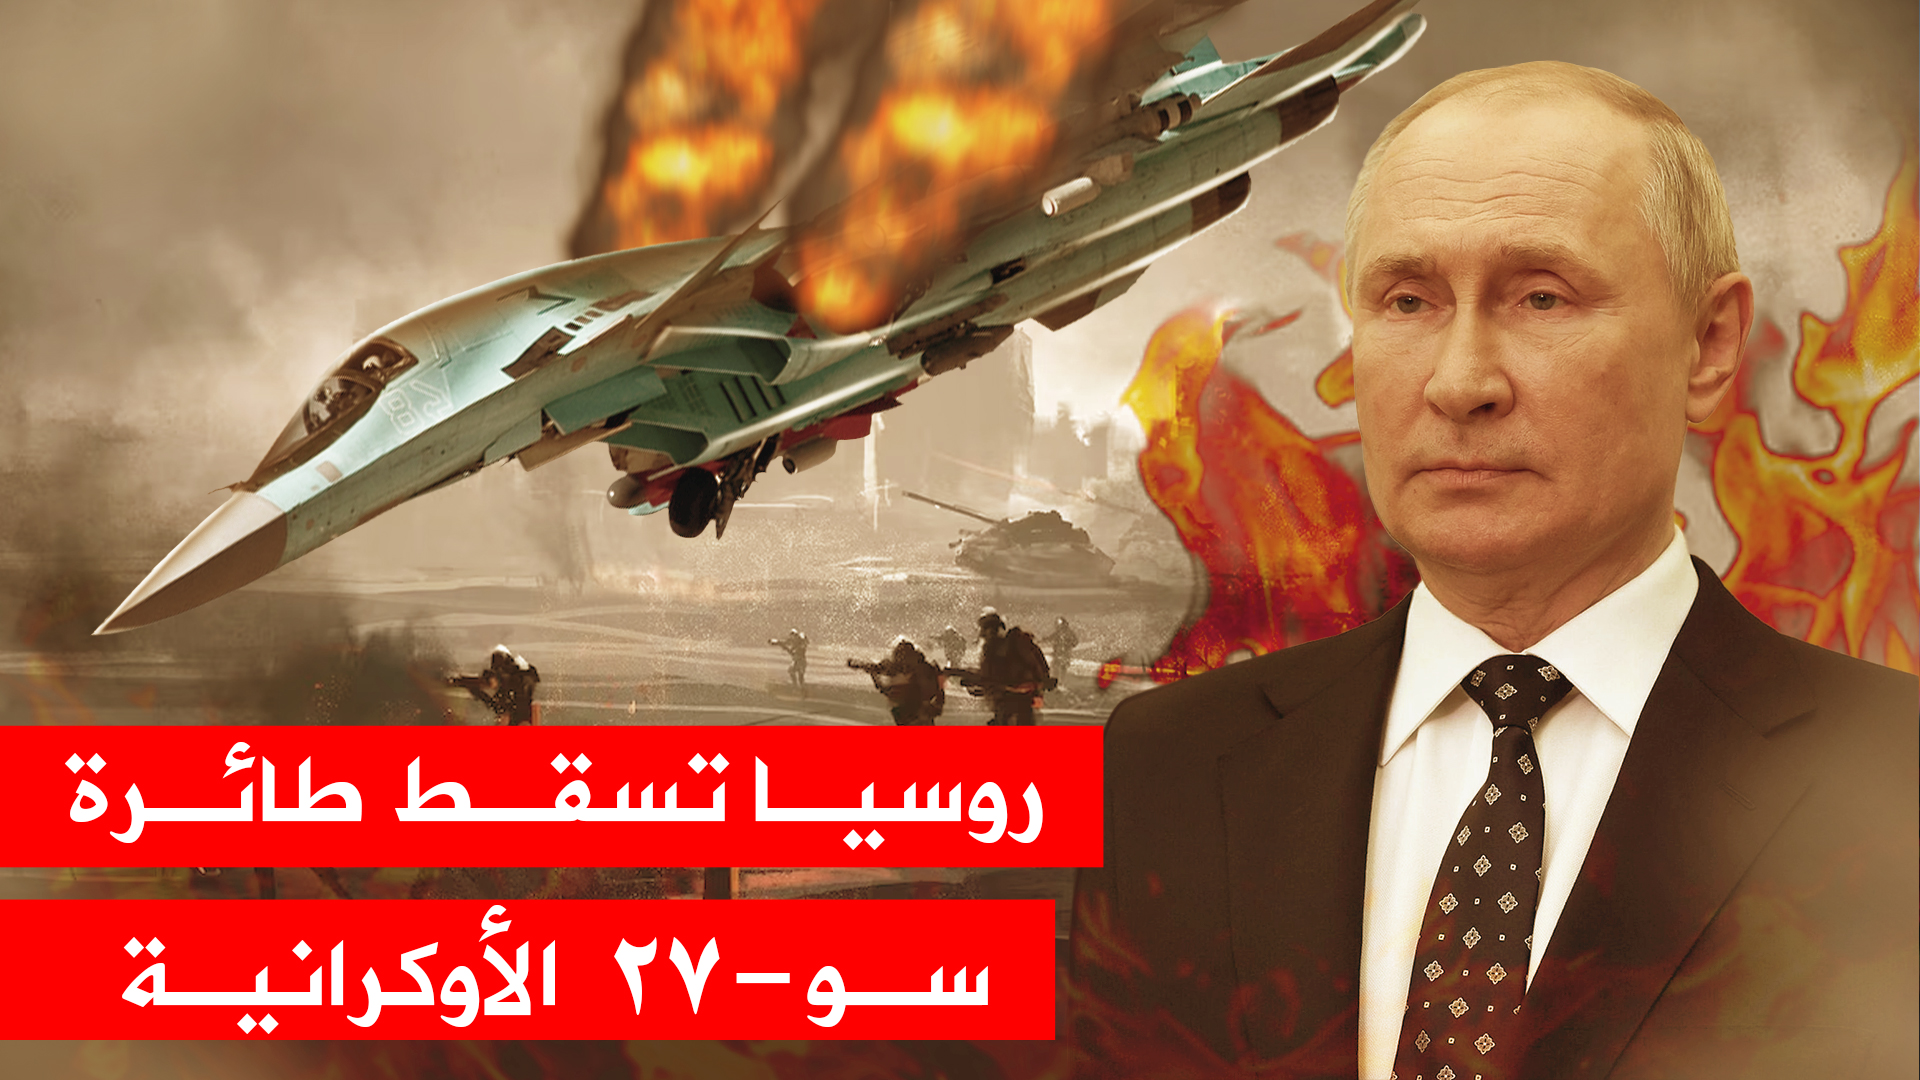 روسيا تُسقط طائرة سو-27 الأوكرانية و انفجار خط انابيب النفط الروسي